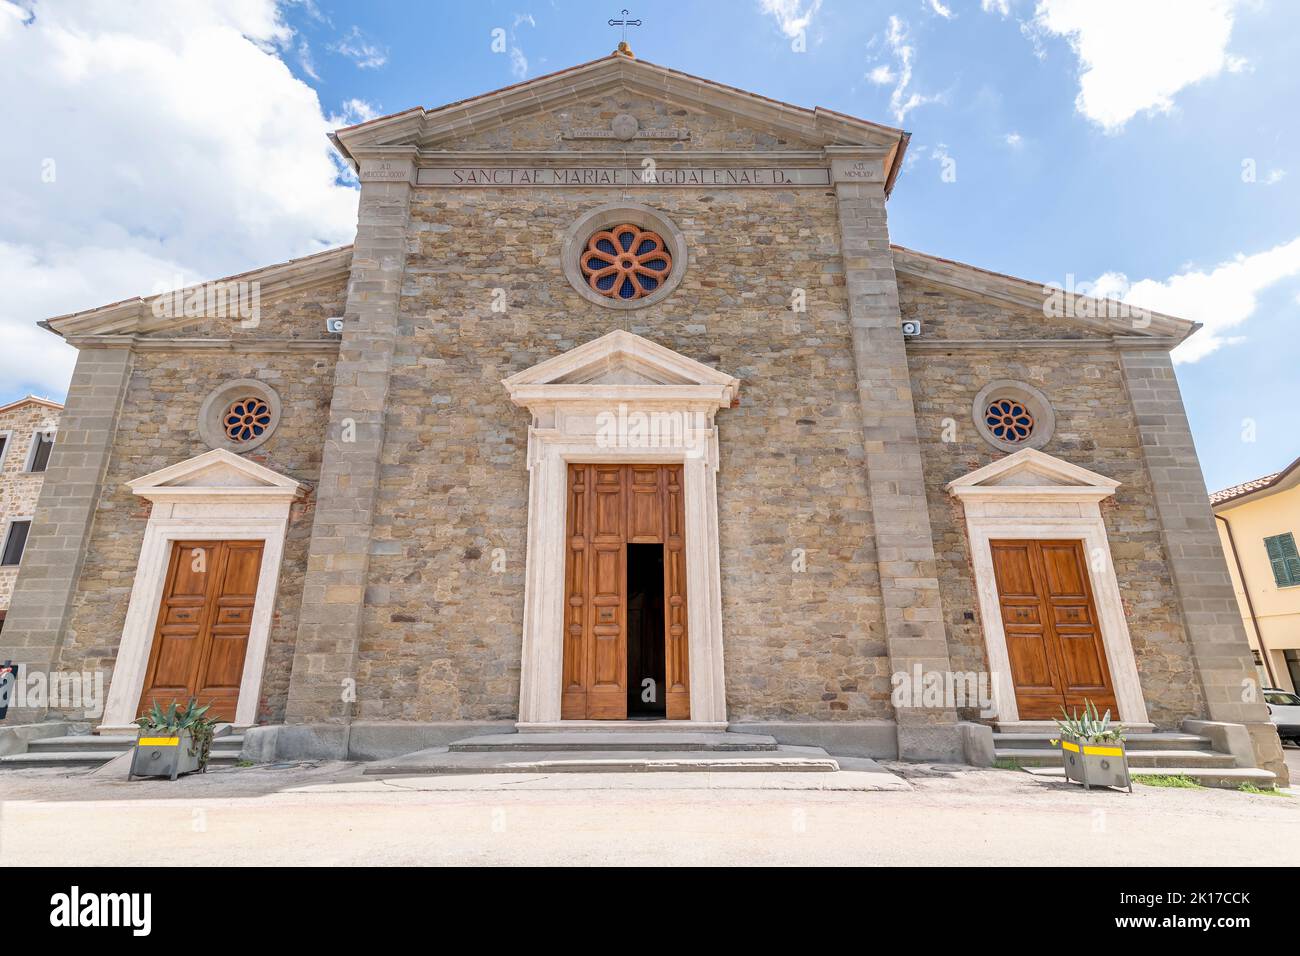 La fachada de la Iglesia Parroquial de Santa Maria Maddalena, Tuoro sul Trasimeno, Perugia, Italia Foto de stock